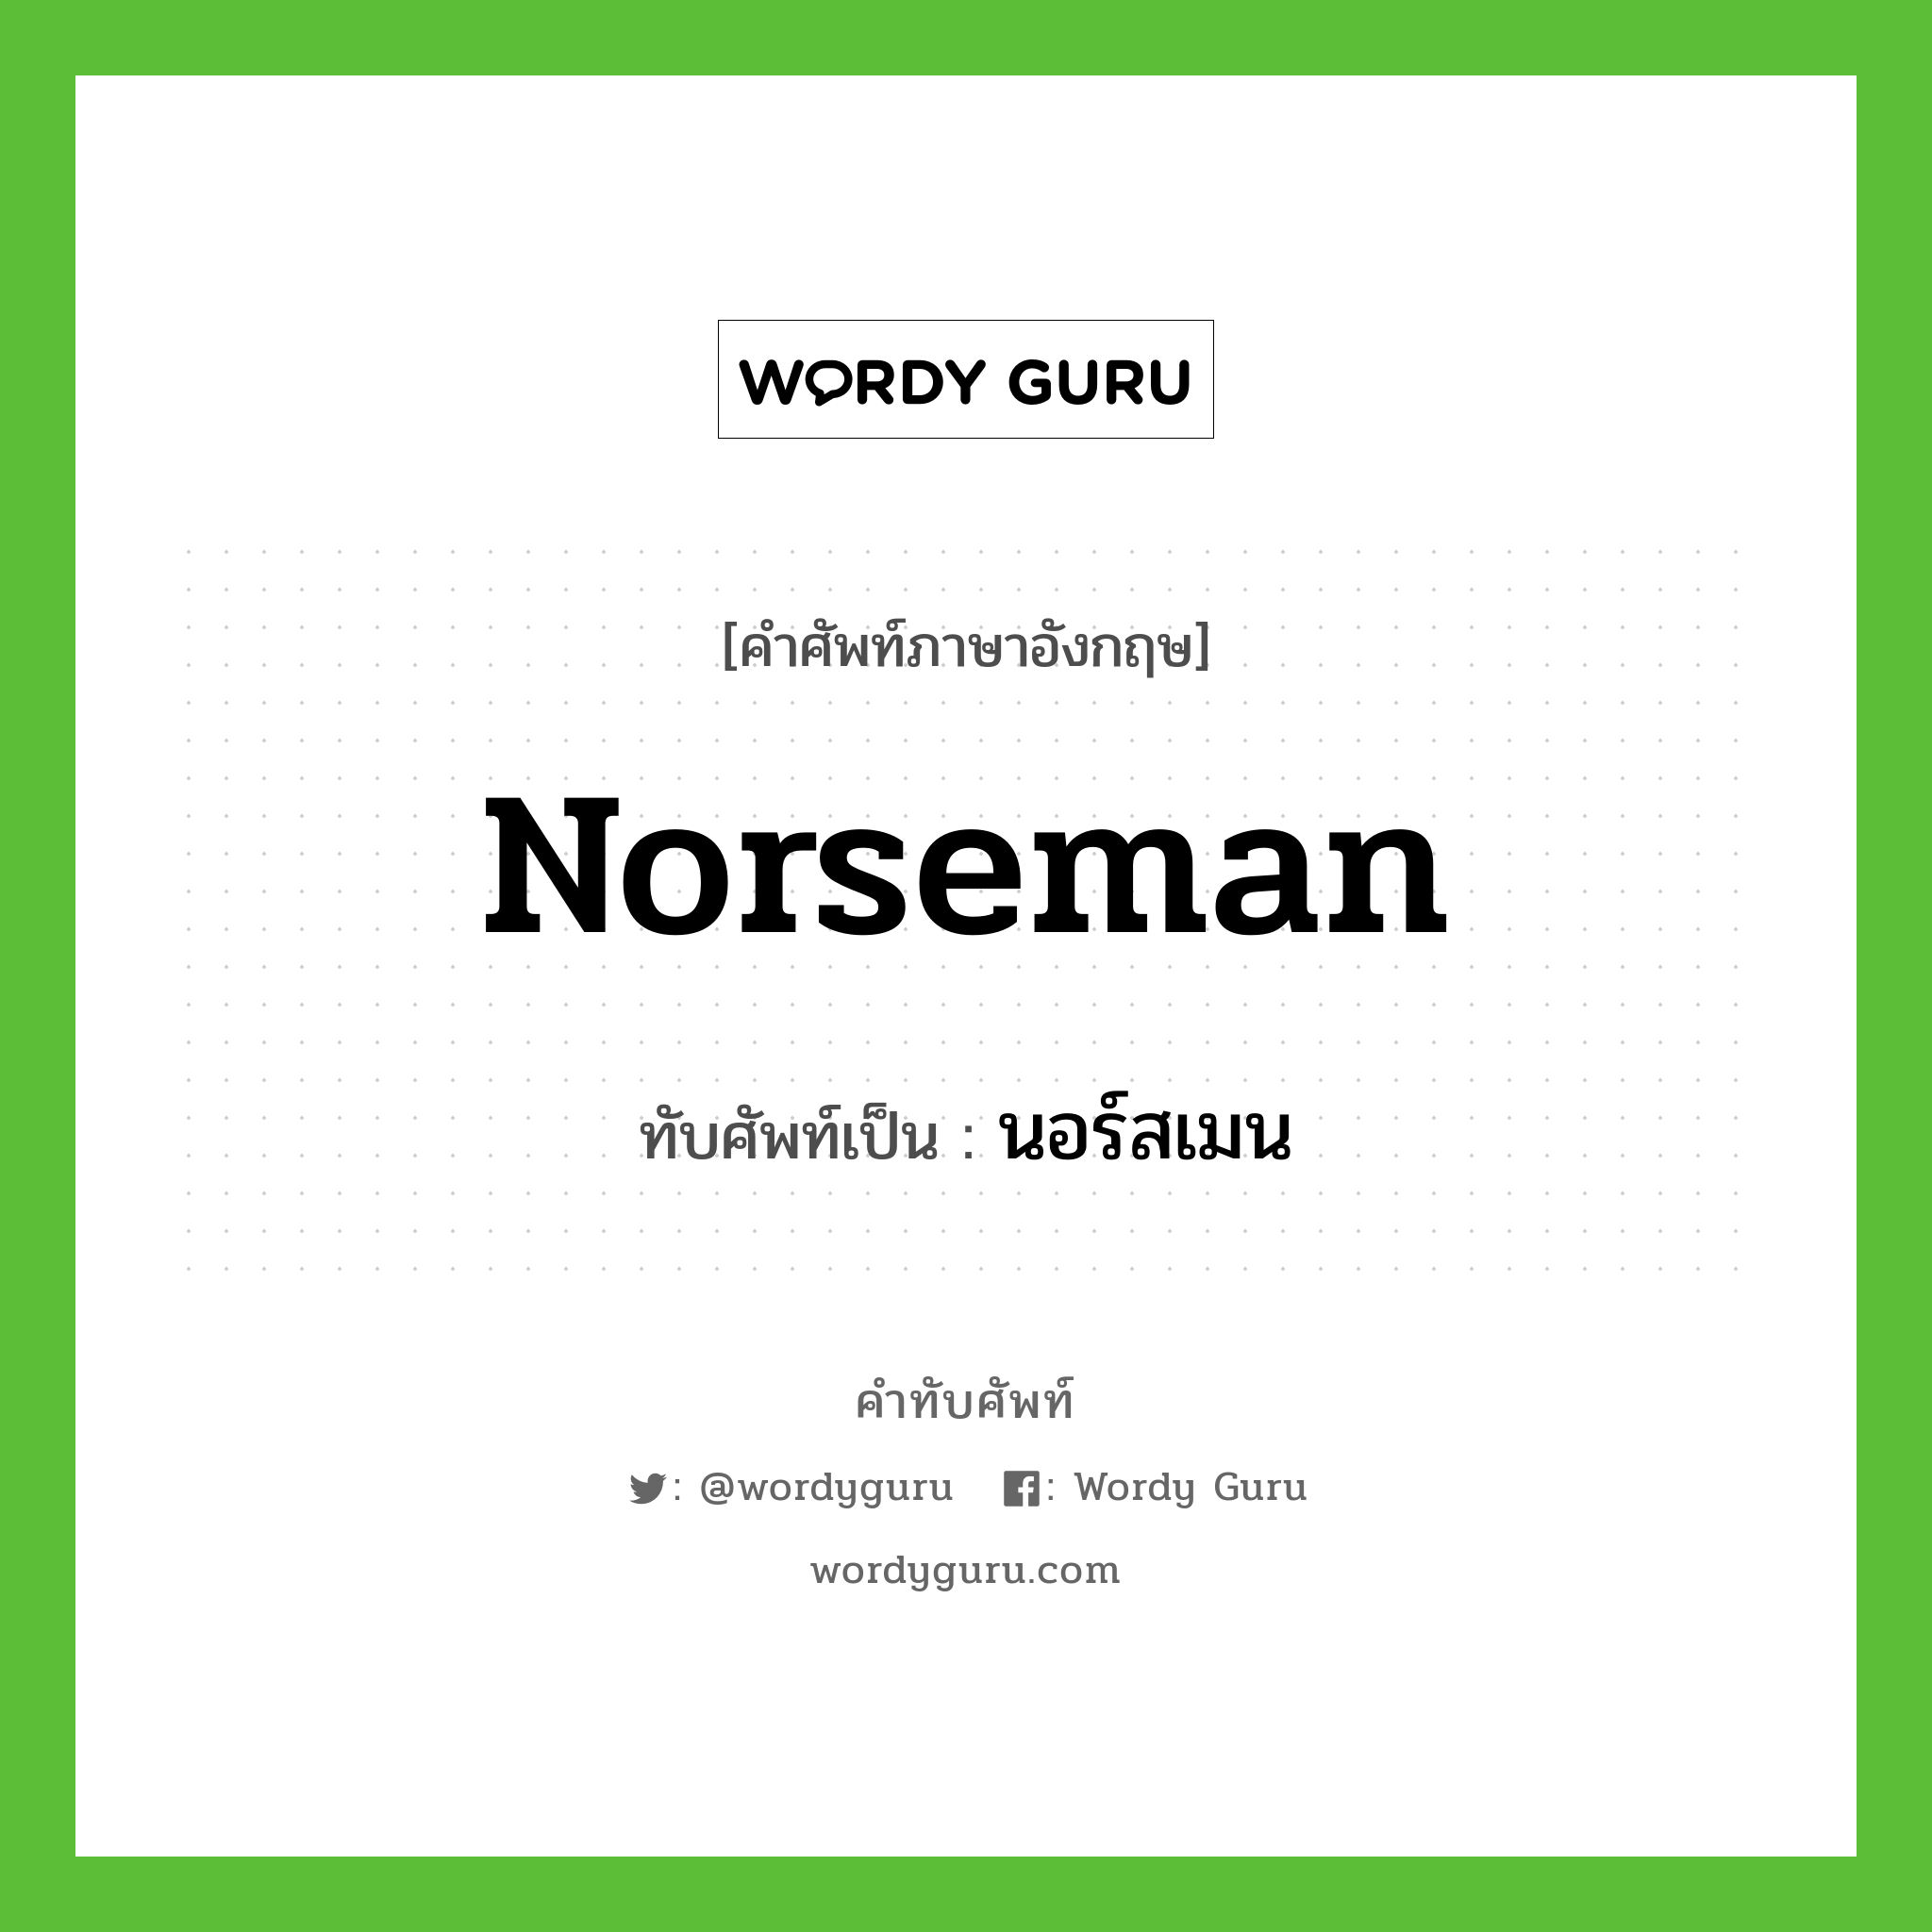 Norseman เขียนเป็นคำไทยว่าอะไร?, คำศัพท์ภาษาอังกฤษ Norseman ทับศัพท์เป็น นอร์สเมน